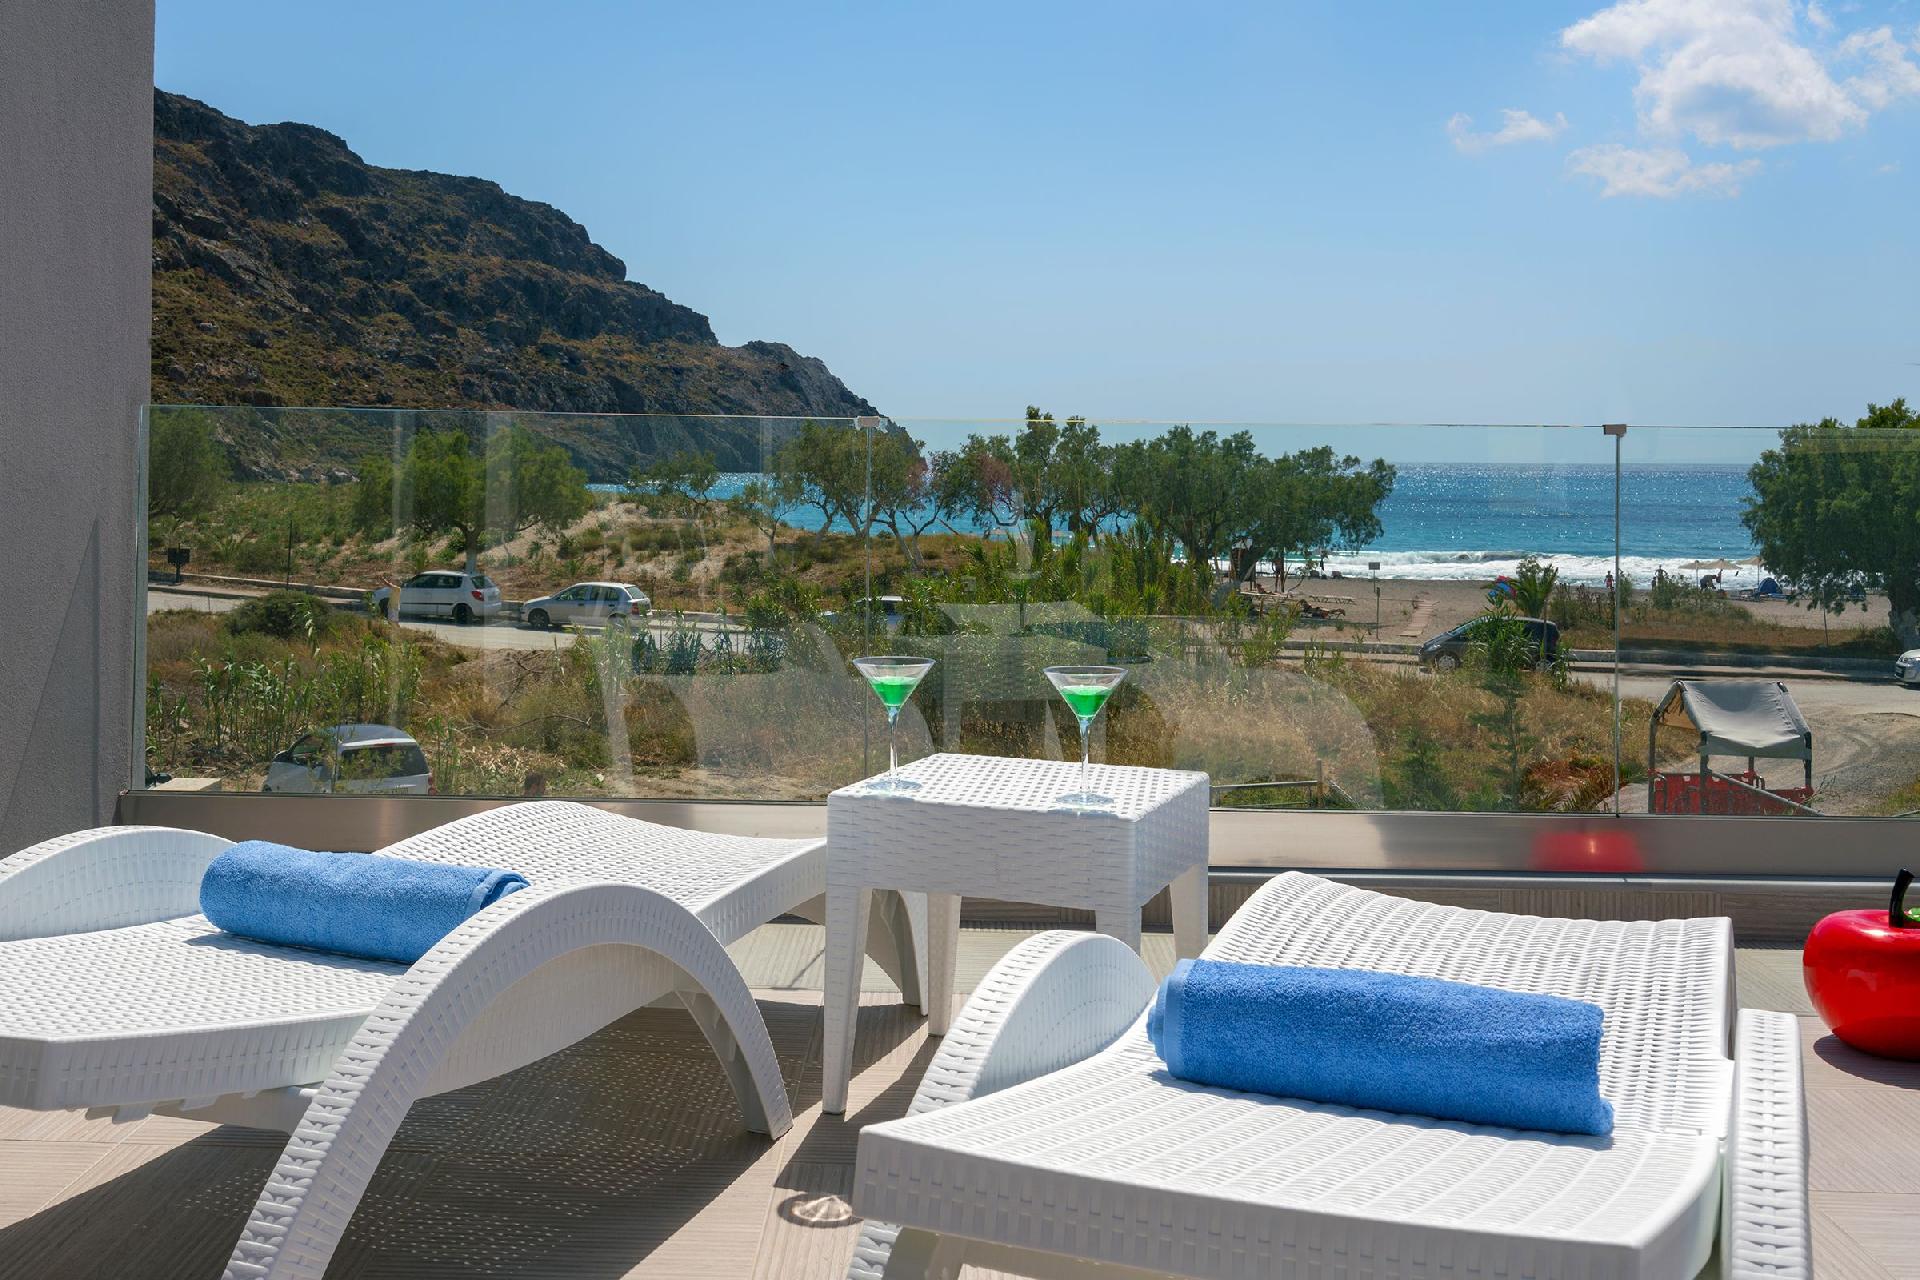 Ferienhaus mit Privatpool für 7 Personen ca.  Ferienhaus in Griechenland